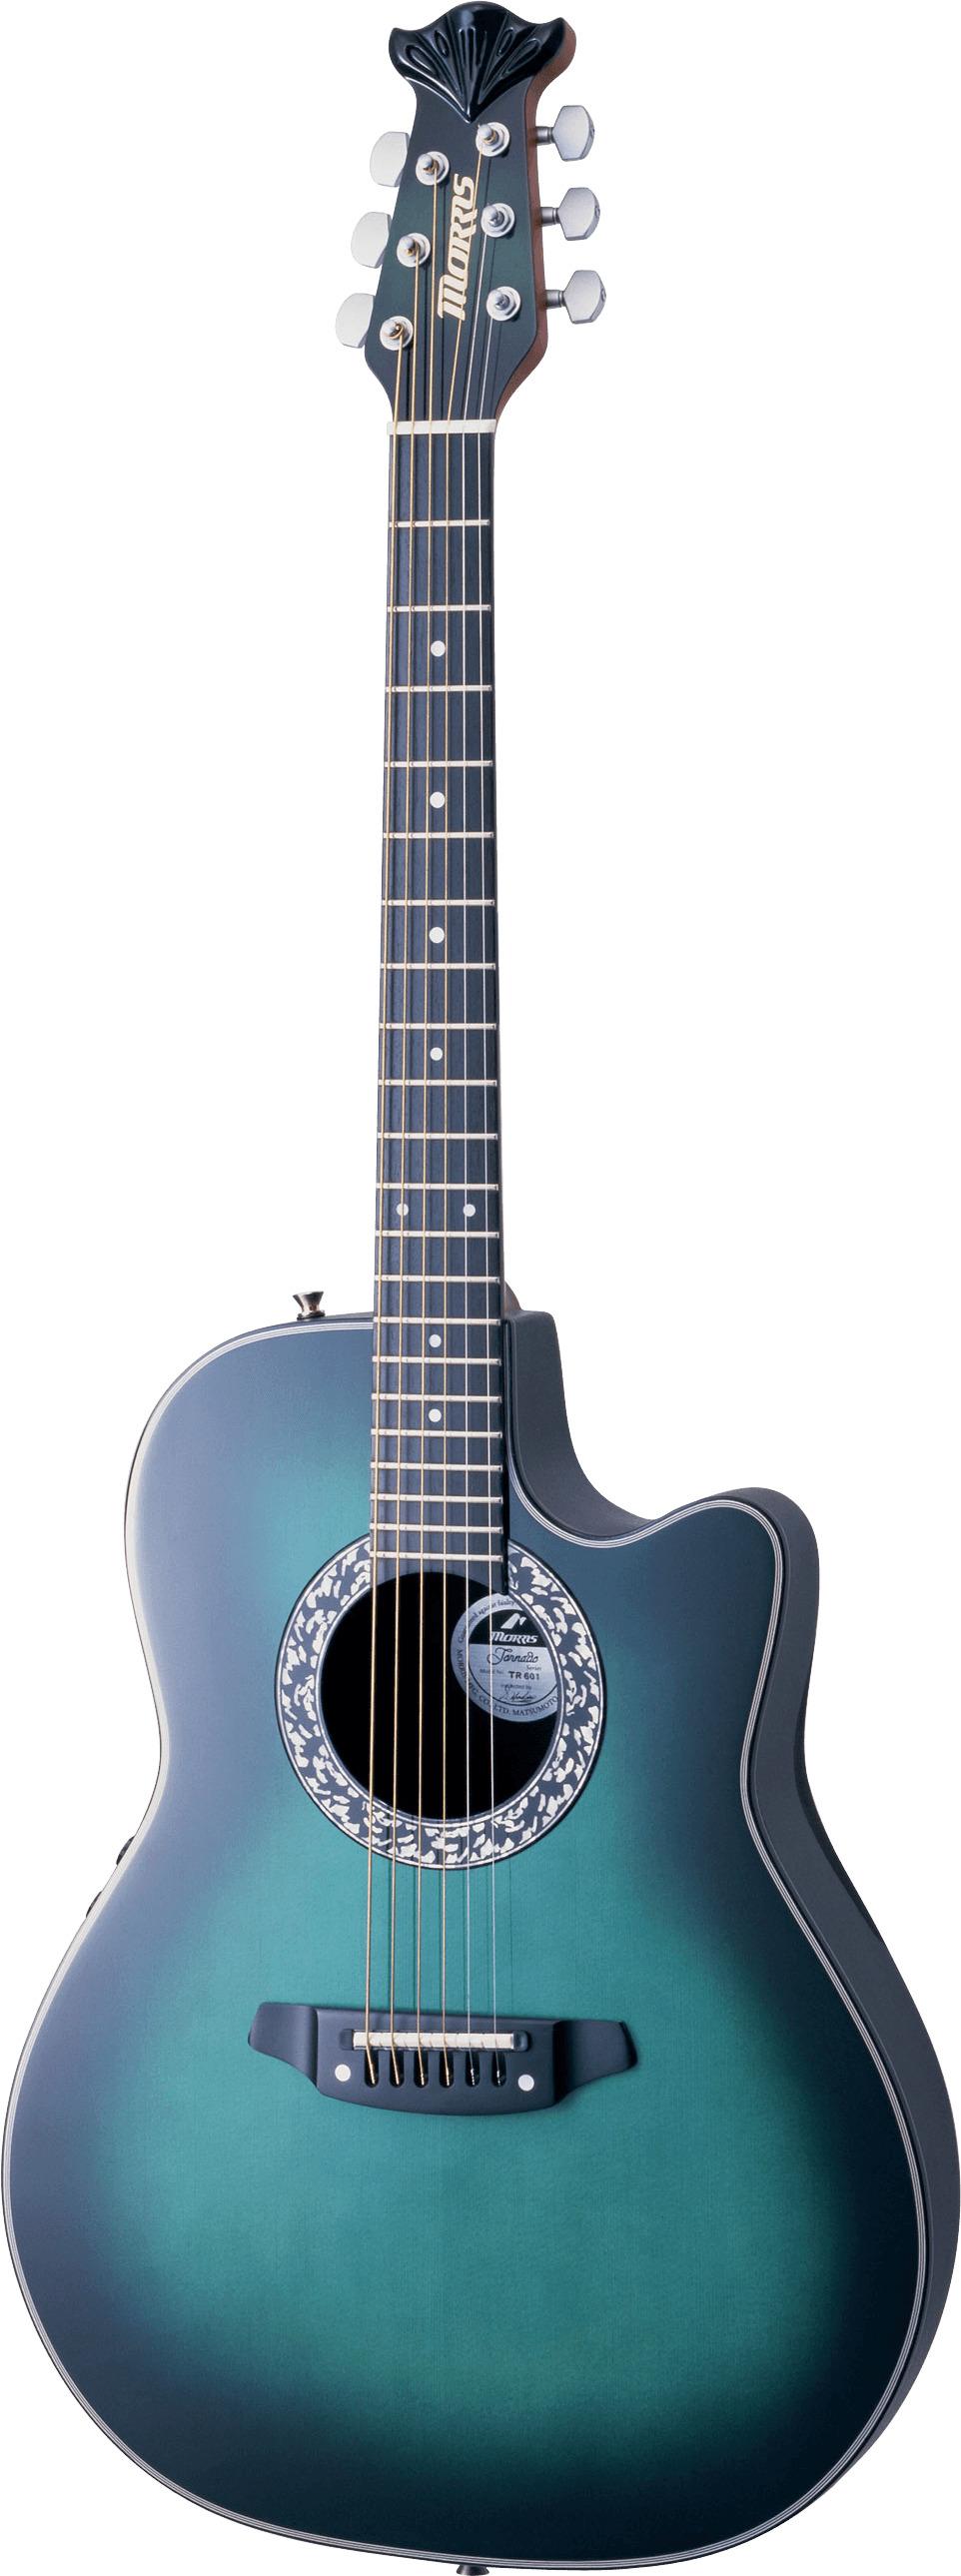 Acoustic Blue Guitar png transparent